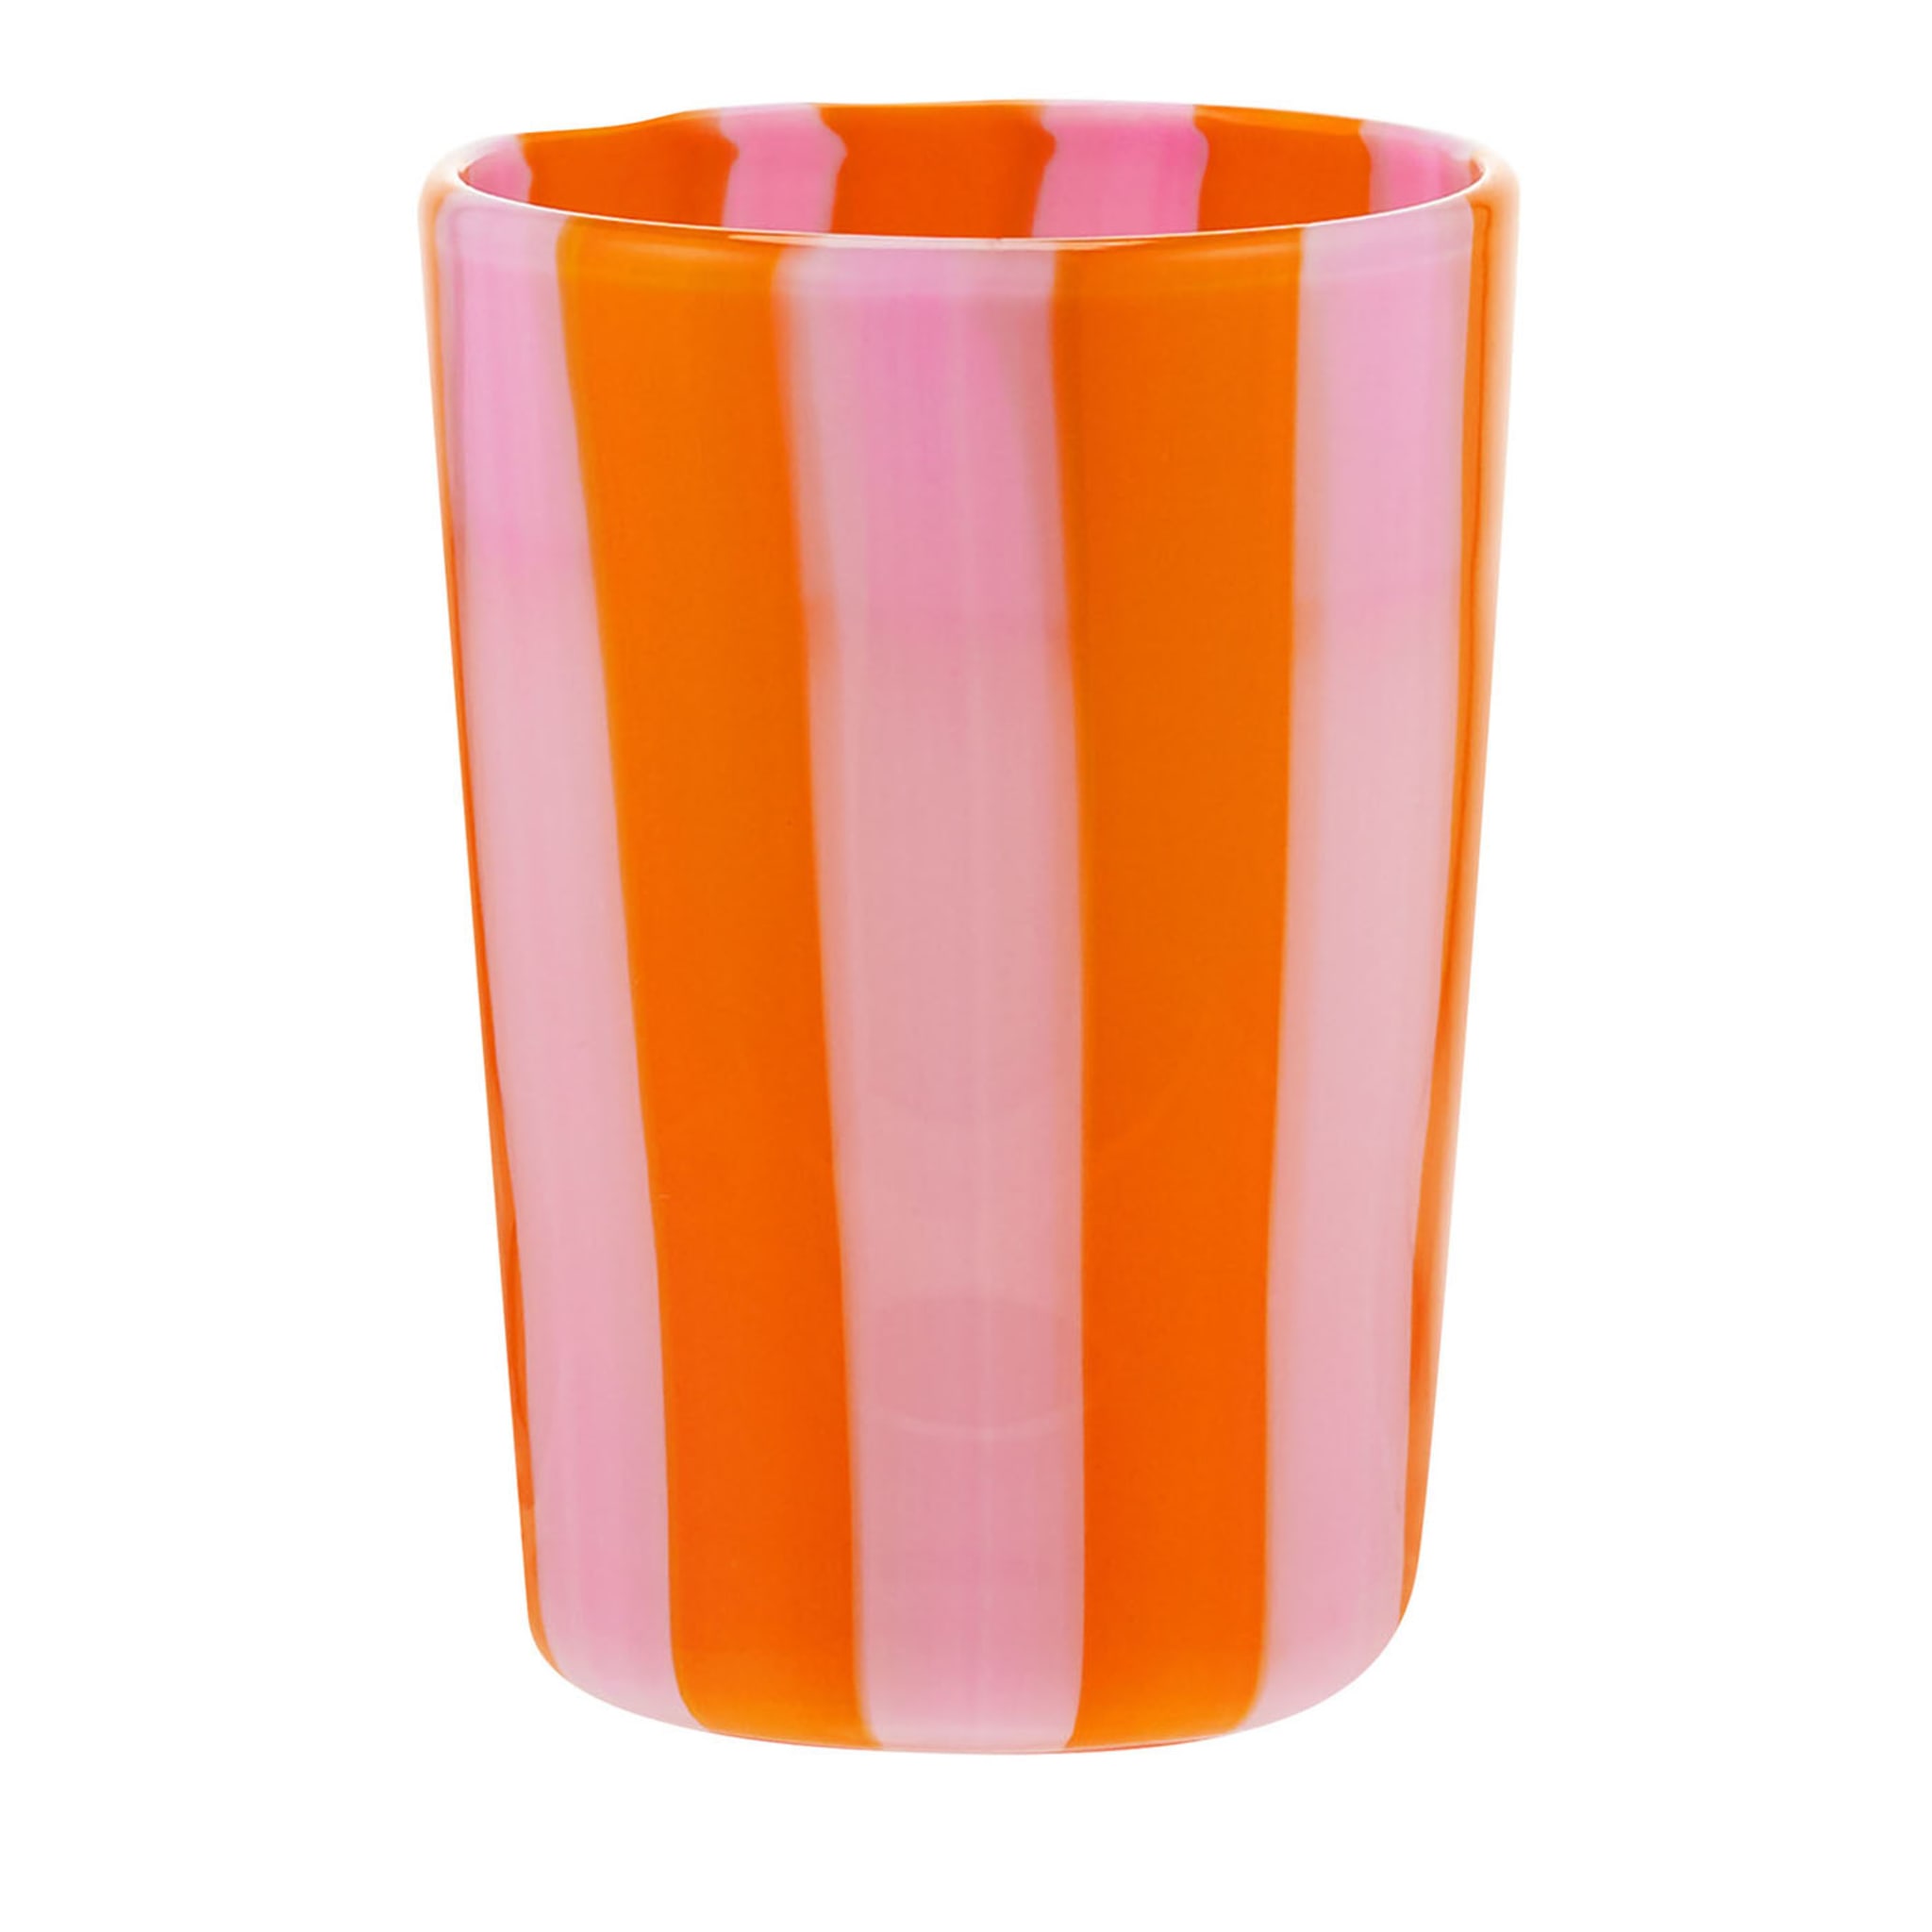 Dolce Vita Set of 2 Orange & Pink Mouth-Blown Water Tumblers - Main view